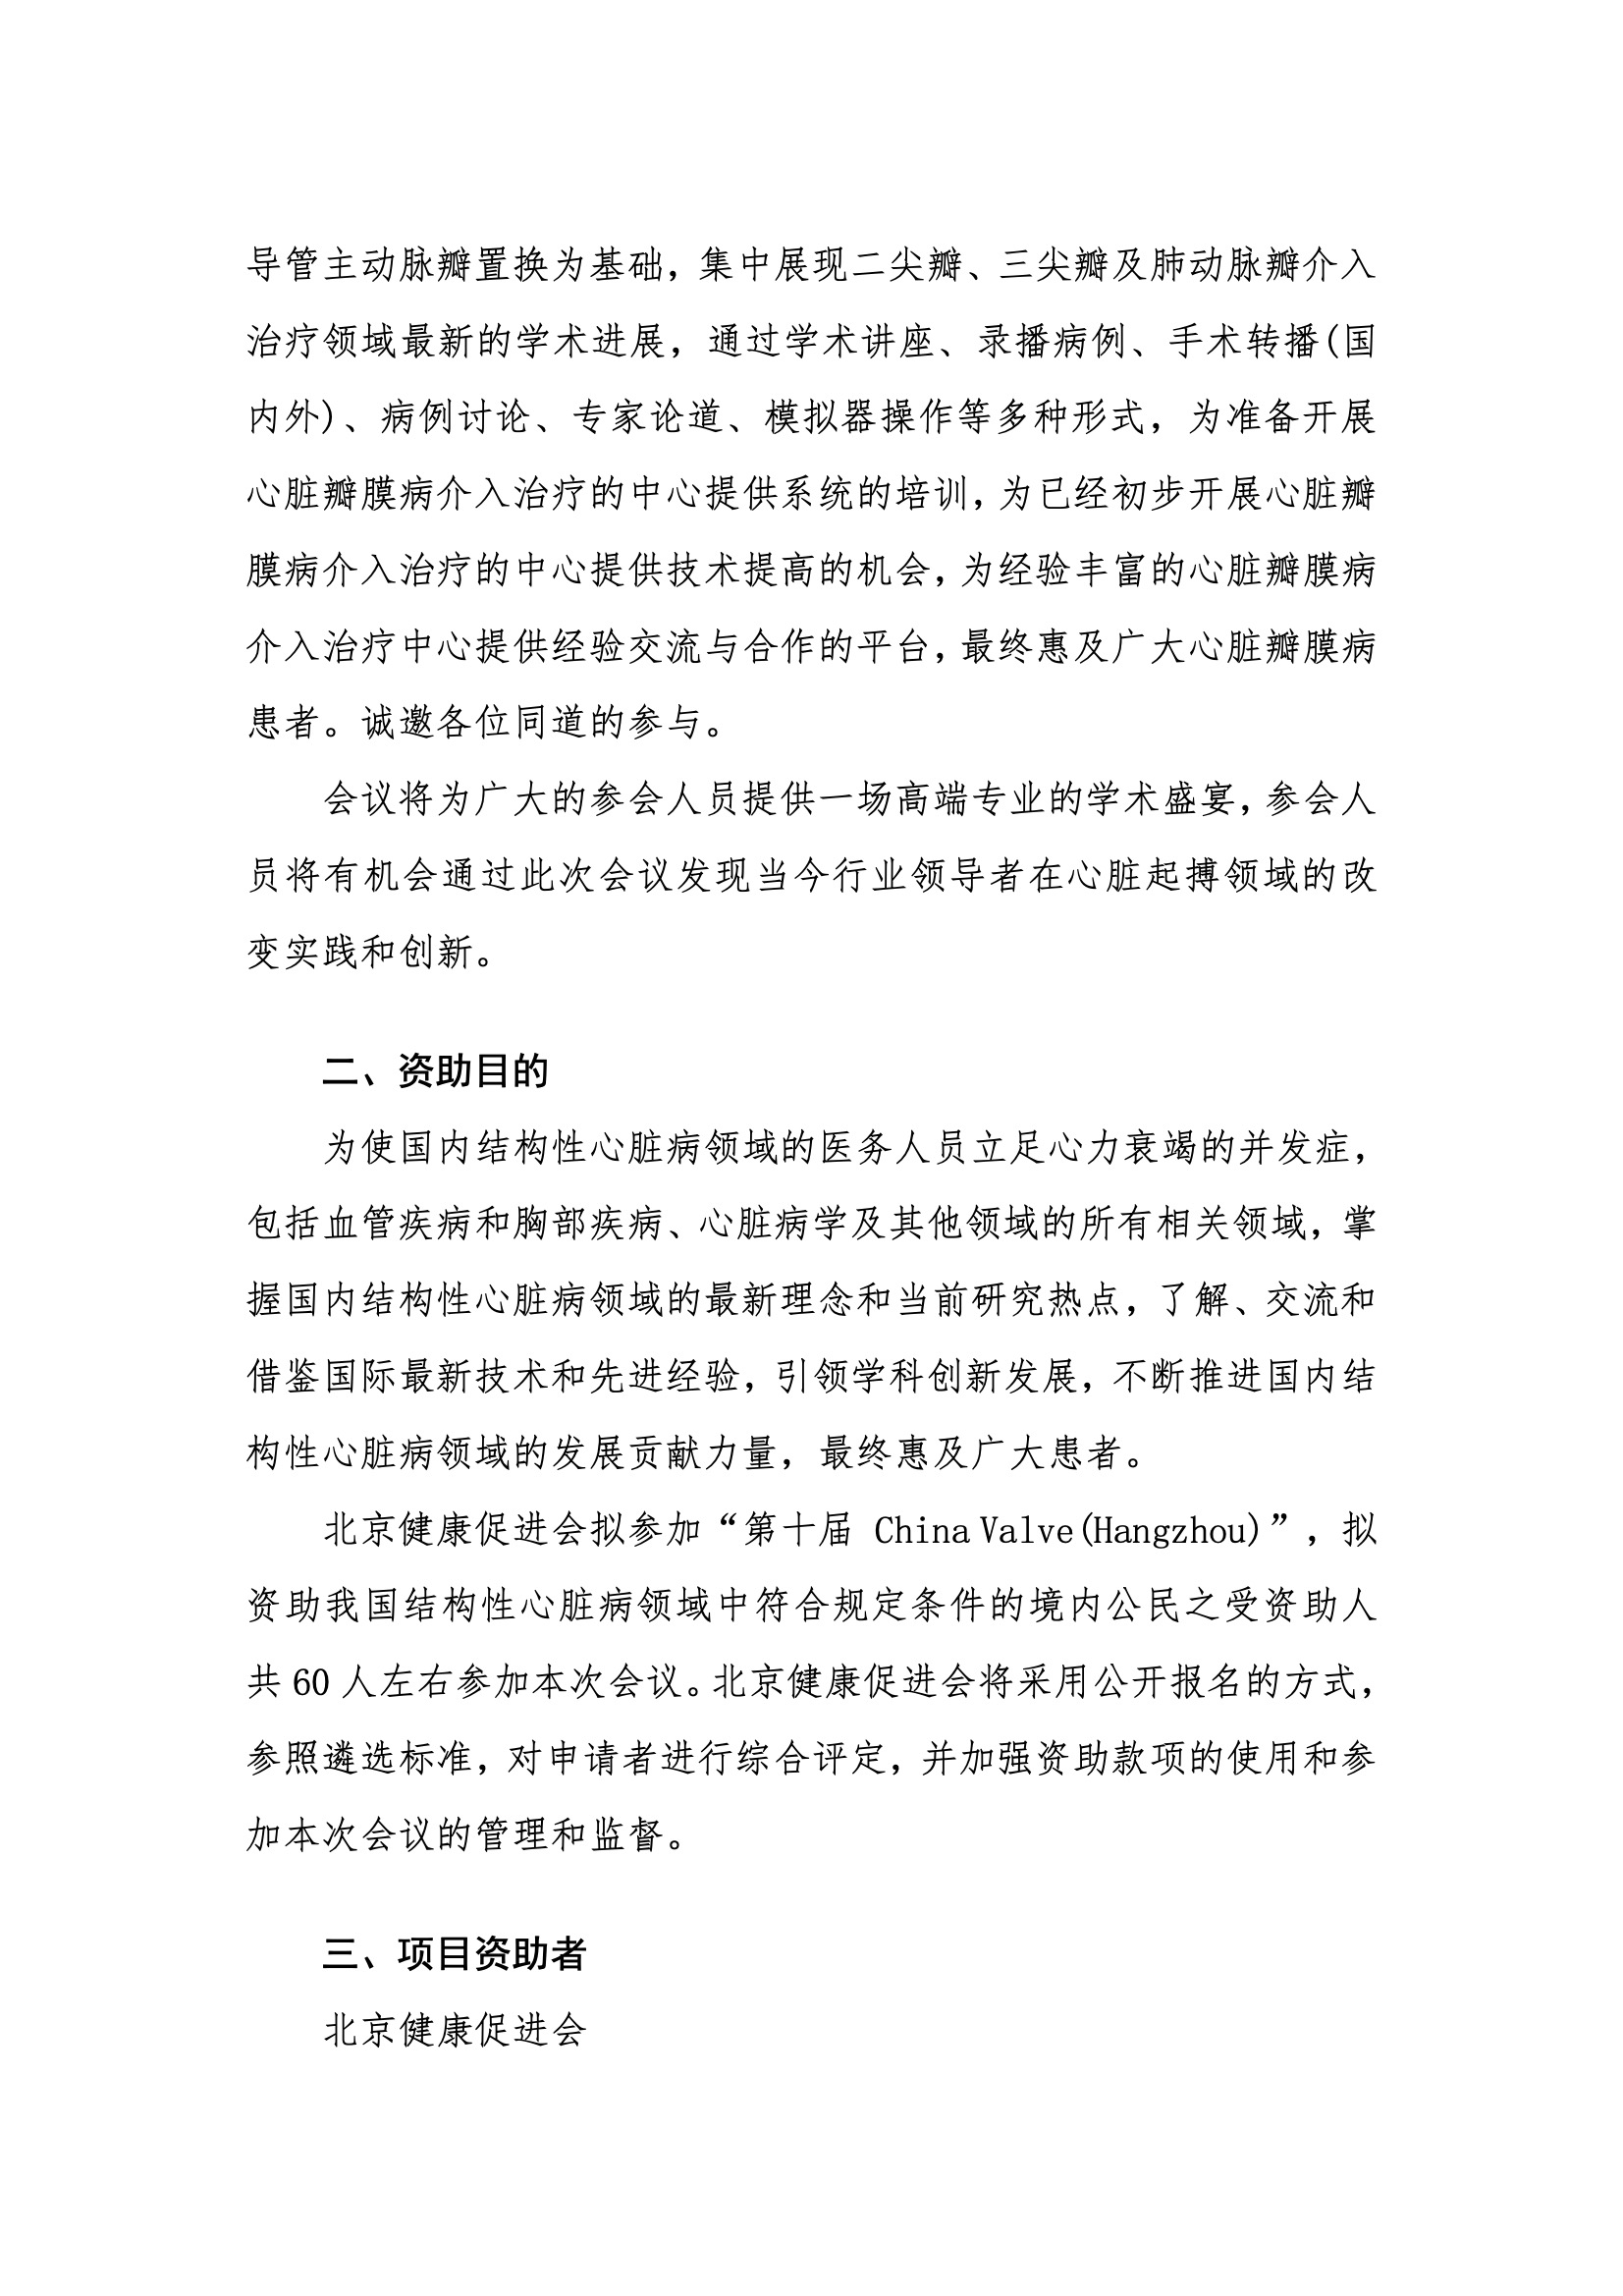 资助申请通知-第十届 China Valve（Hangzhou） 2.jpeg